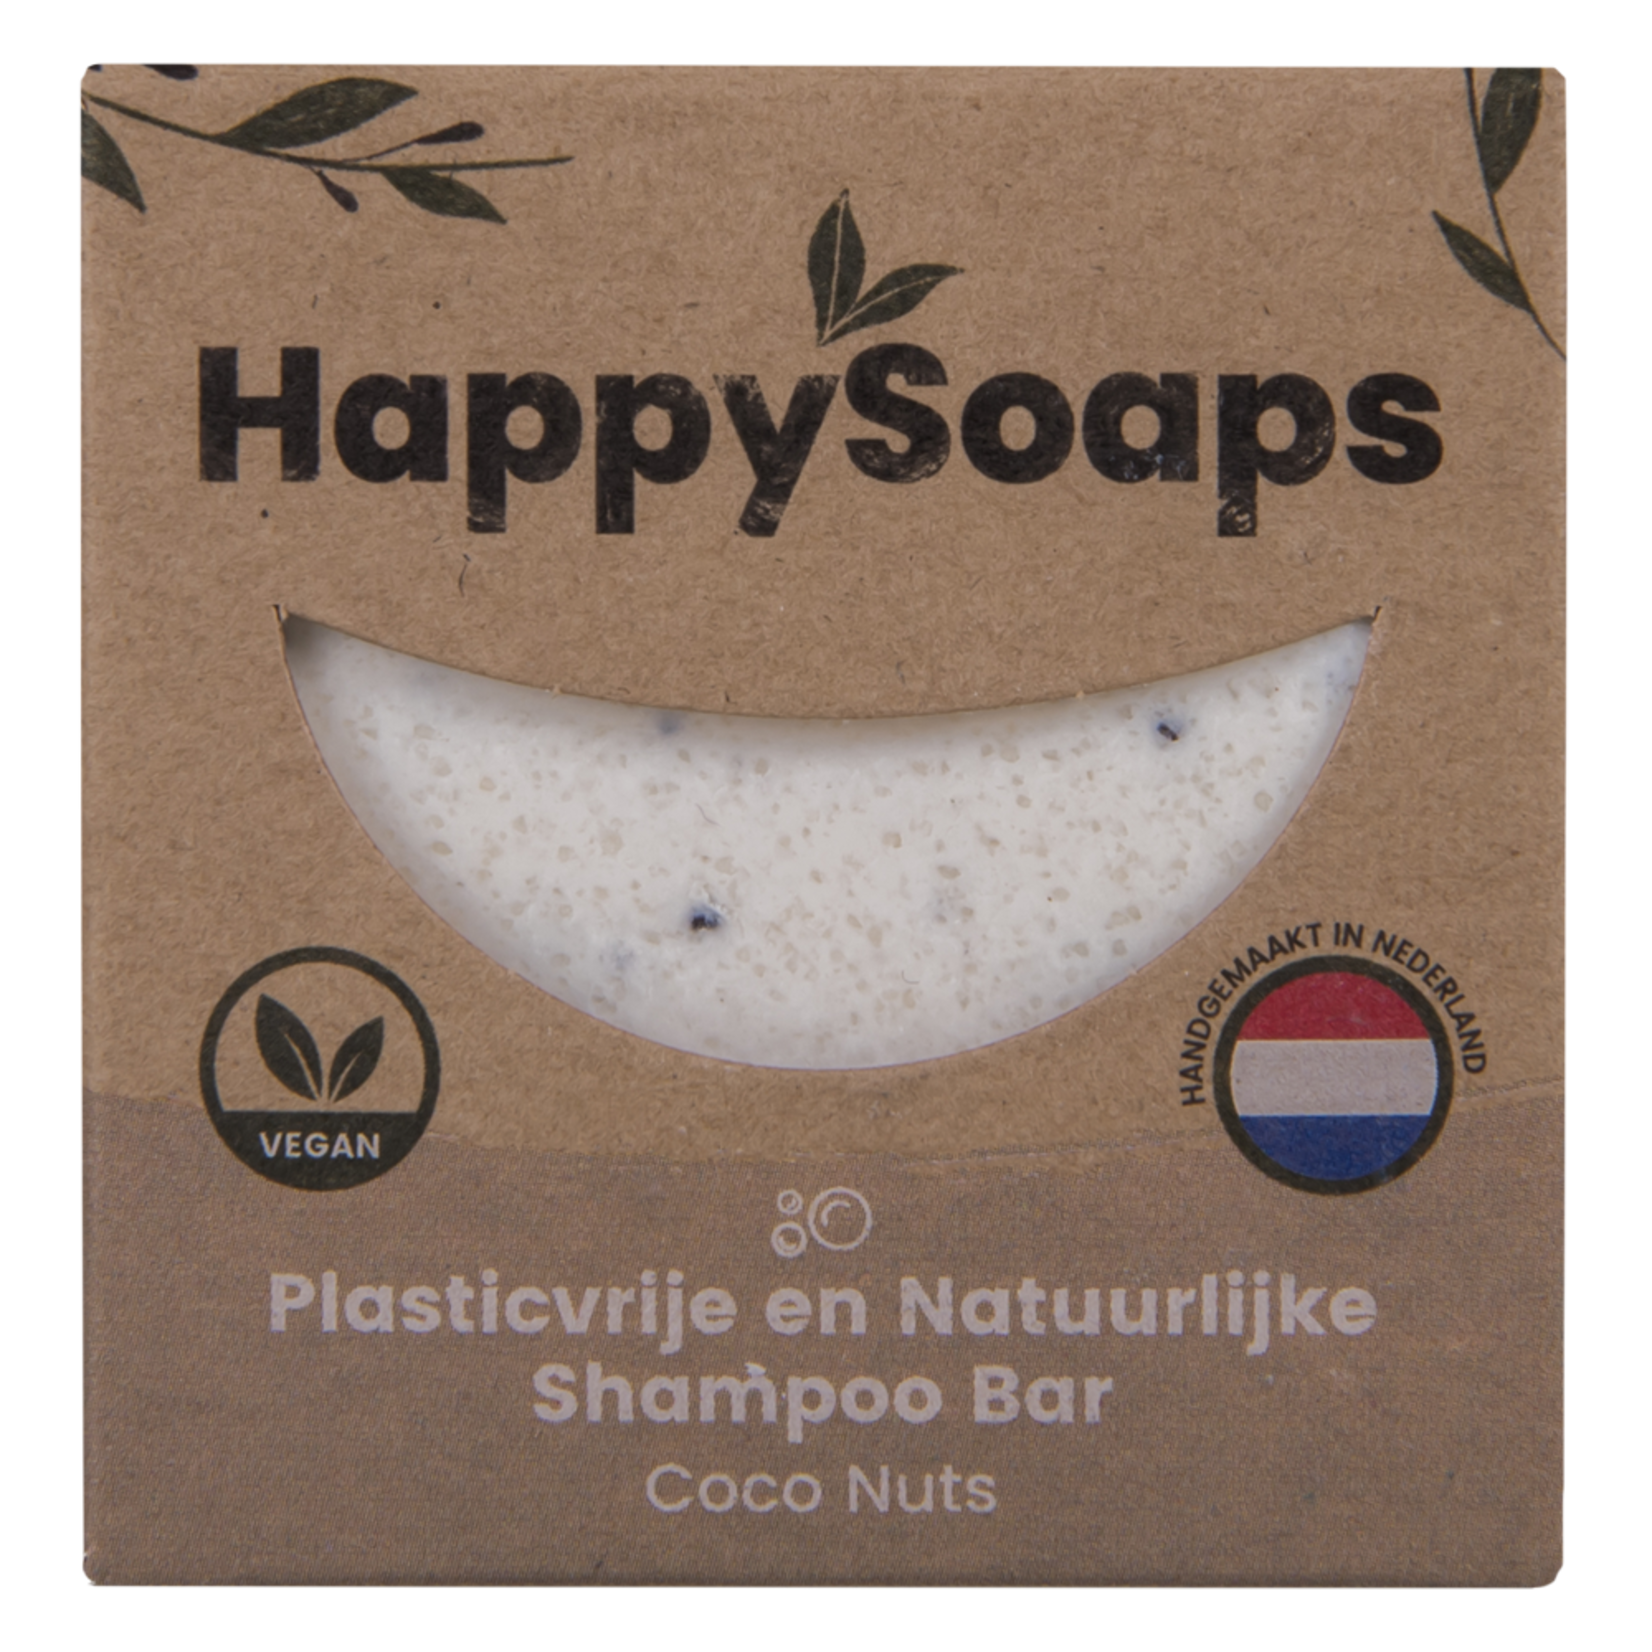 The Happy Soaps Happy Soaps Shampoo Bar